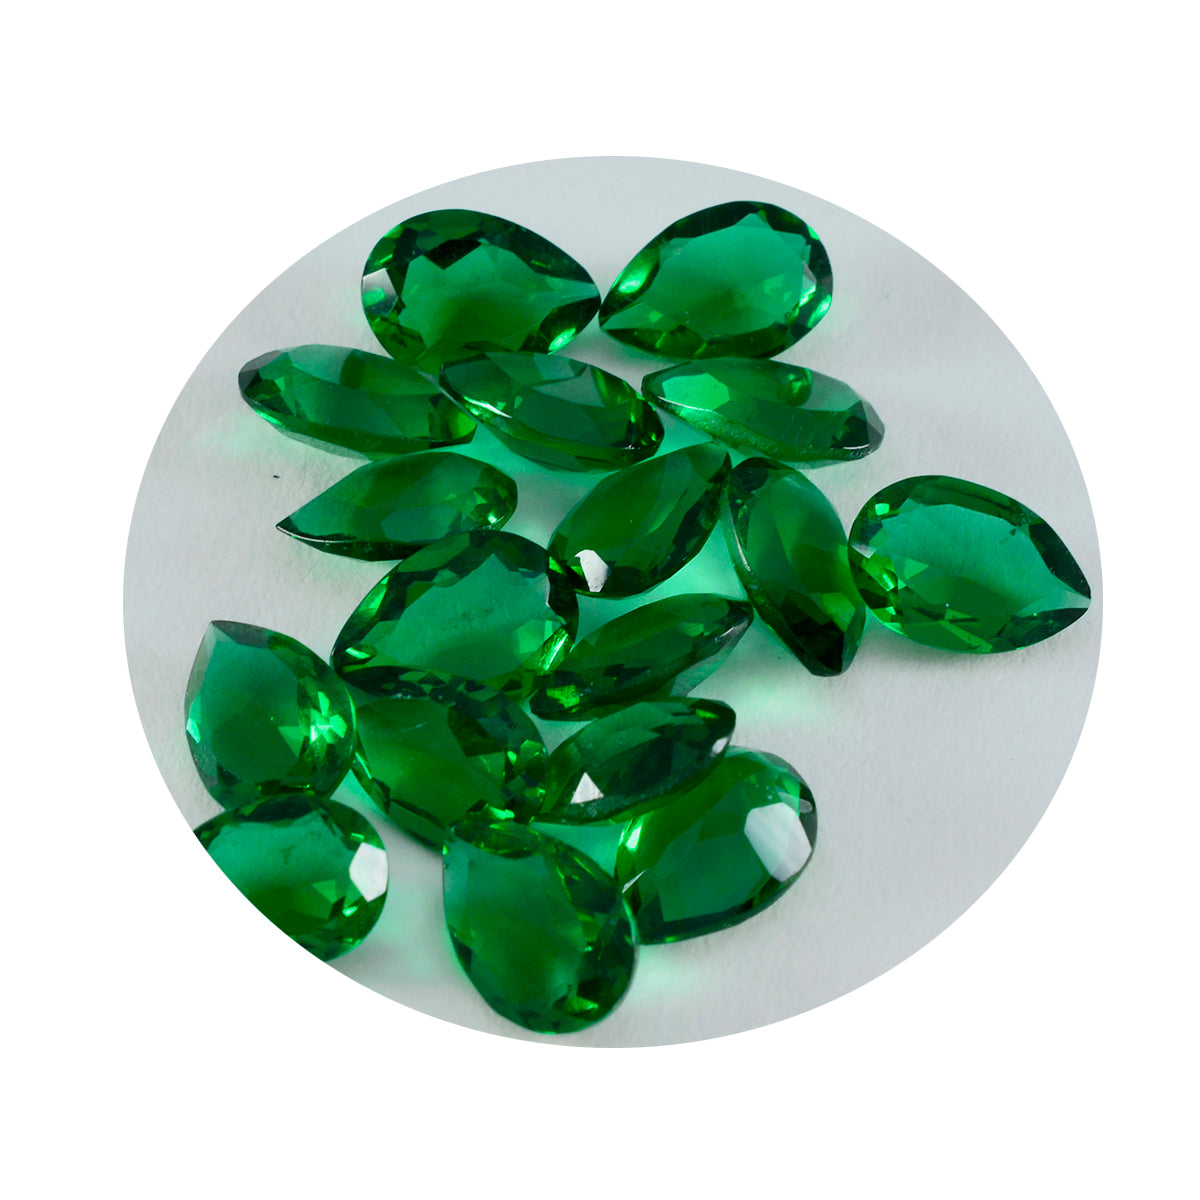 riyogems 1шт зеленый изумруд граненый cz 6x9 мм драгоценные камни грушевидной формы фантастического качества